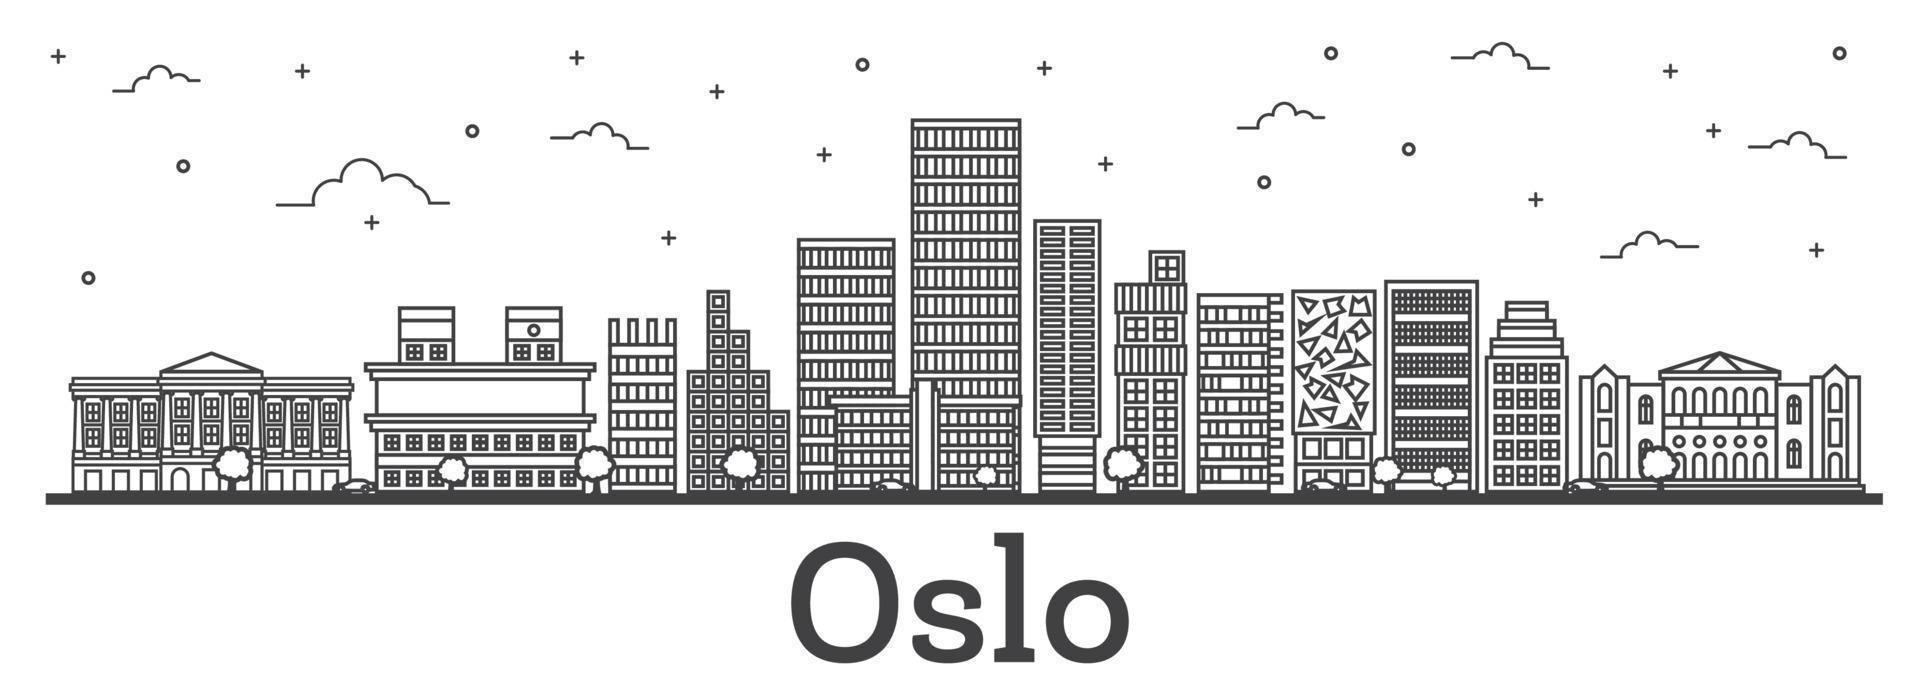 delinear el horizonte de la ciudad de oslo noruega con edificios modernos aislados en blanco. vector